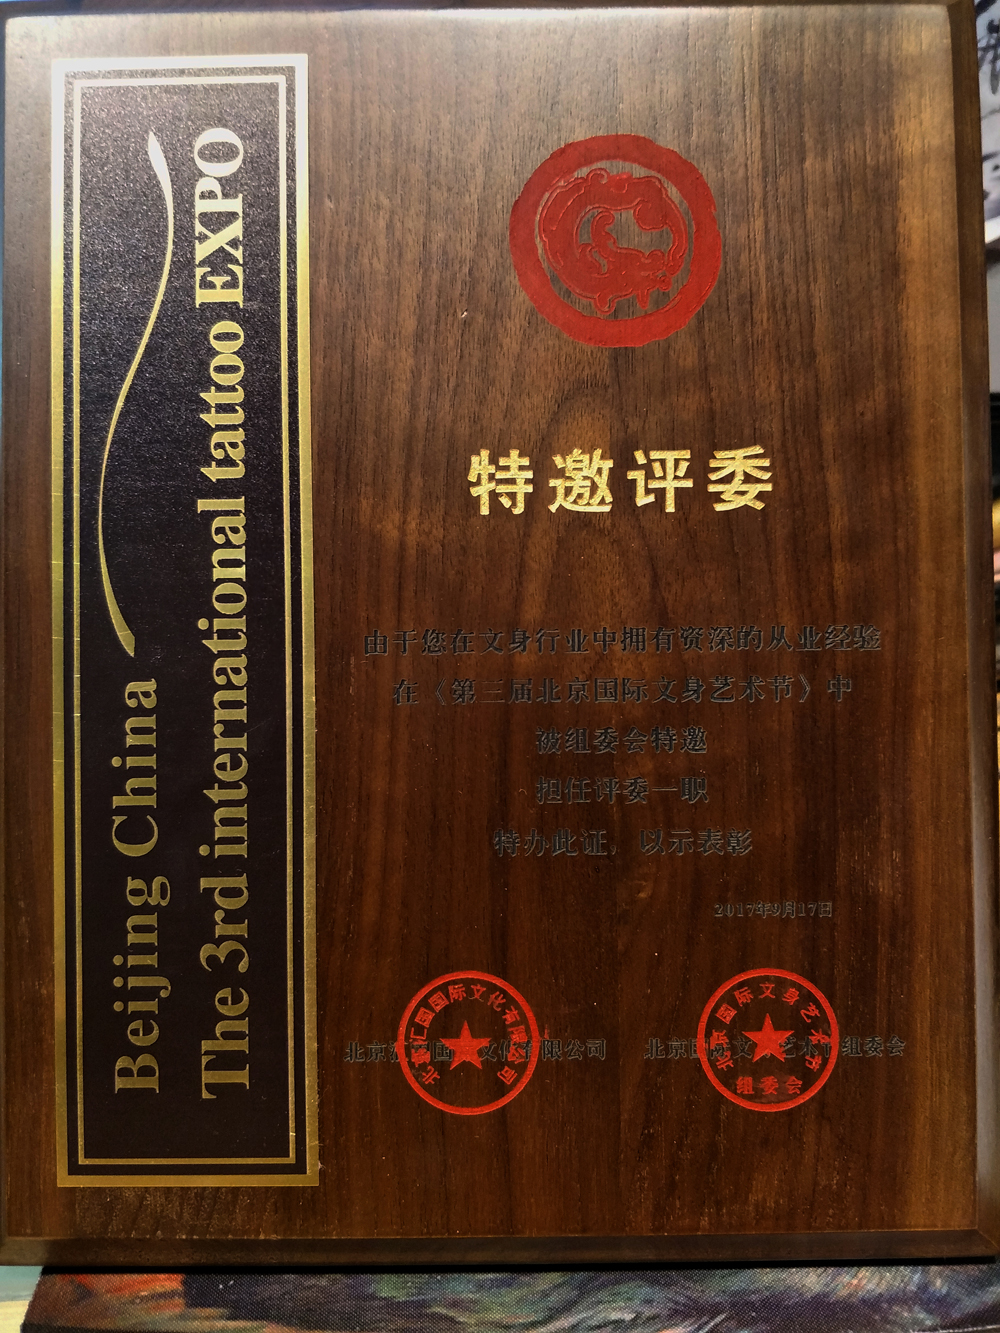 2017年北京第三届国际纹身大赛特邀评委证书